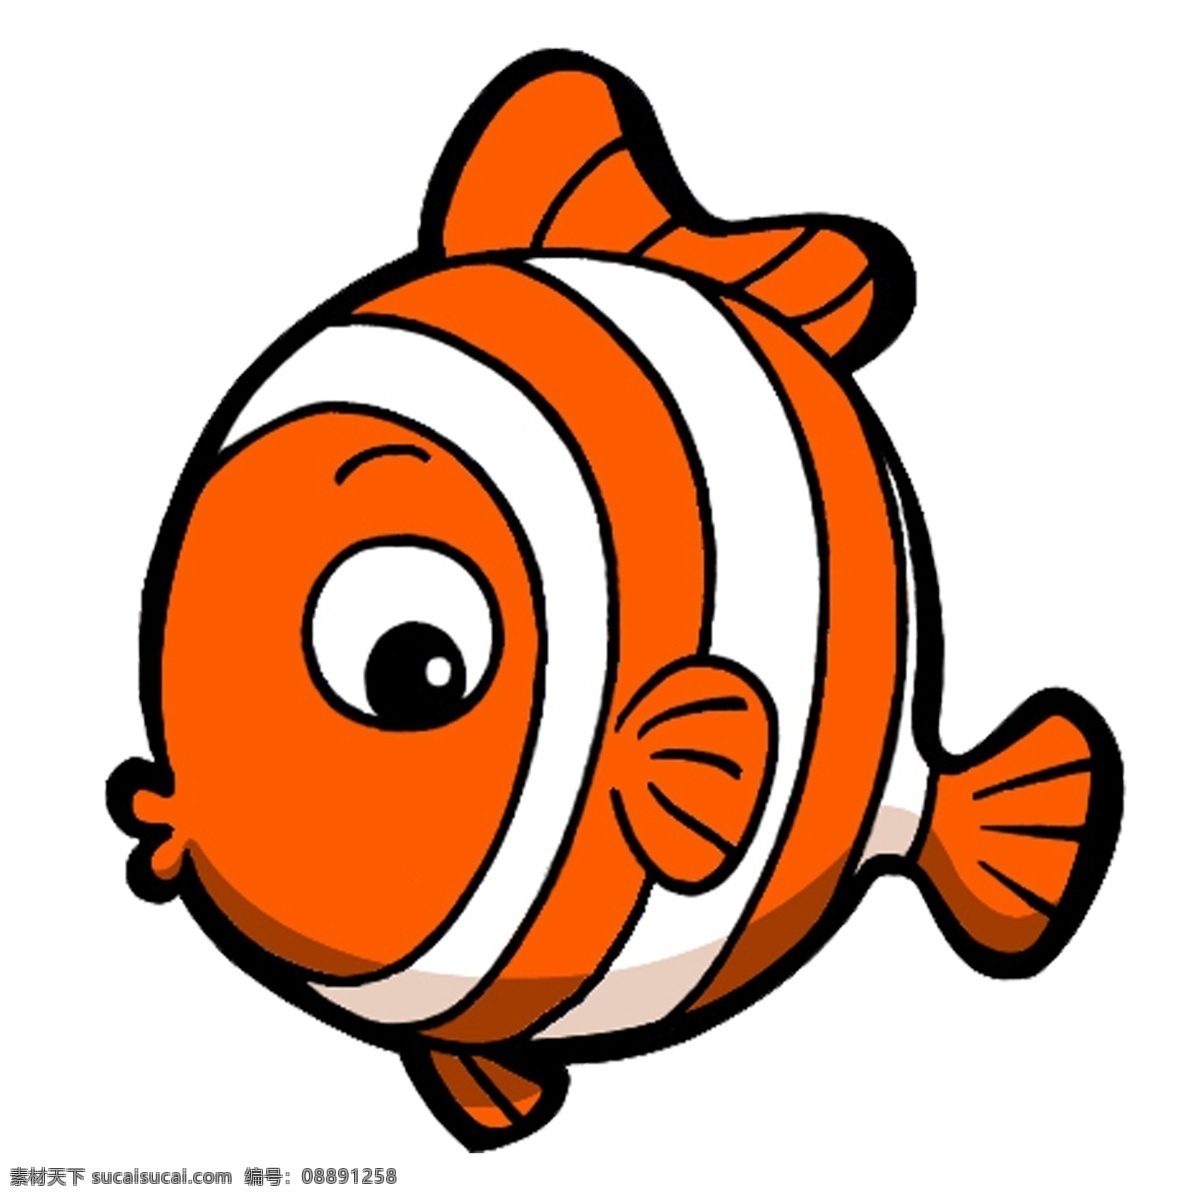 海洋 动物 系列 小丑 鱼 q 版 卡通 可爱 元素 海洋动物 q版 小丑鱼 生物 小动物